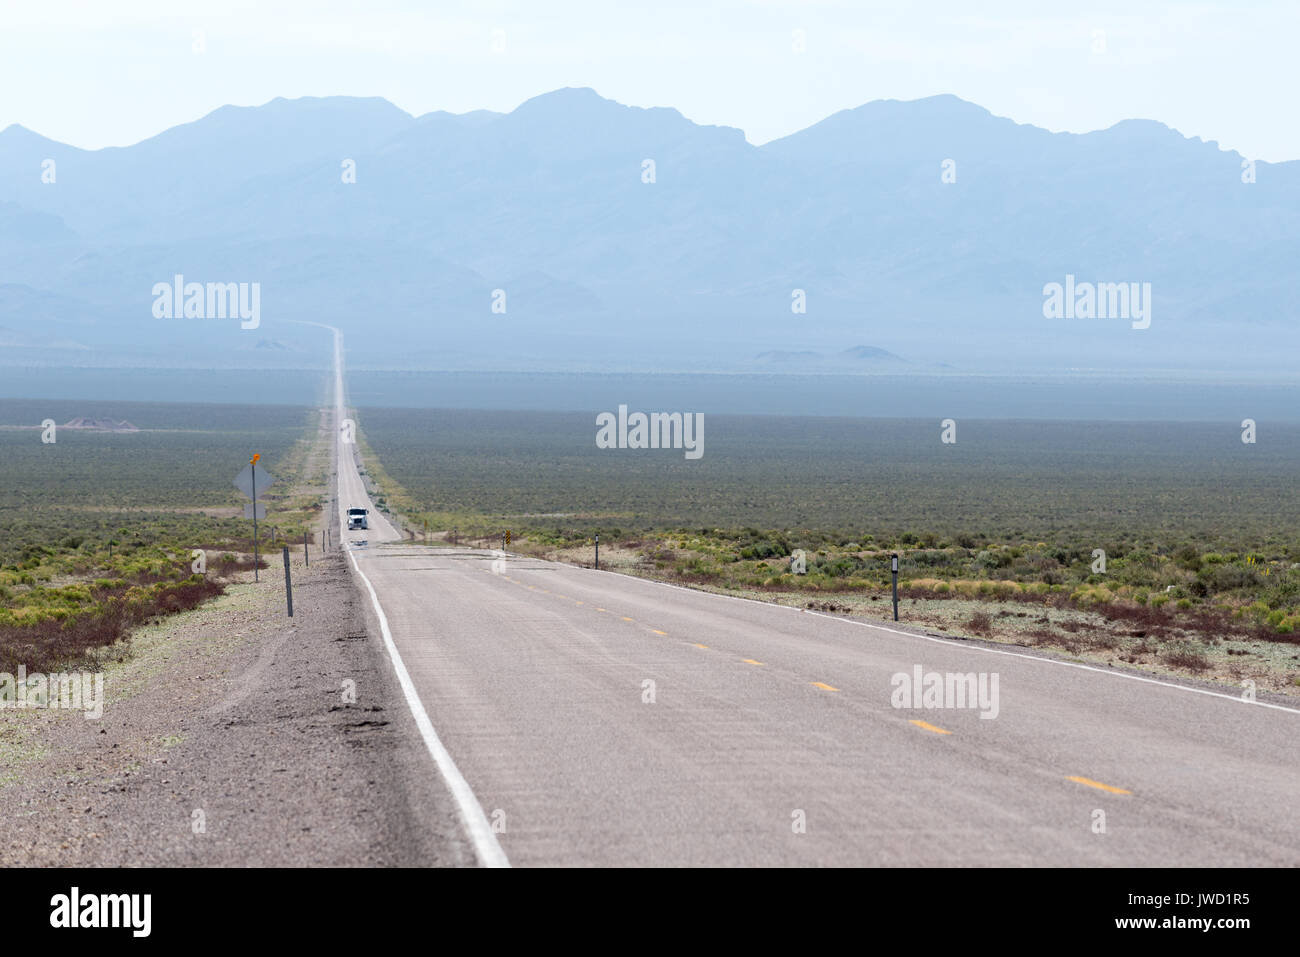 Carrello su una strada desolata nel bacino e la gamma regione del Nevada. Foto Stock